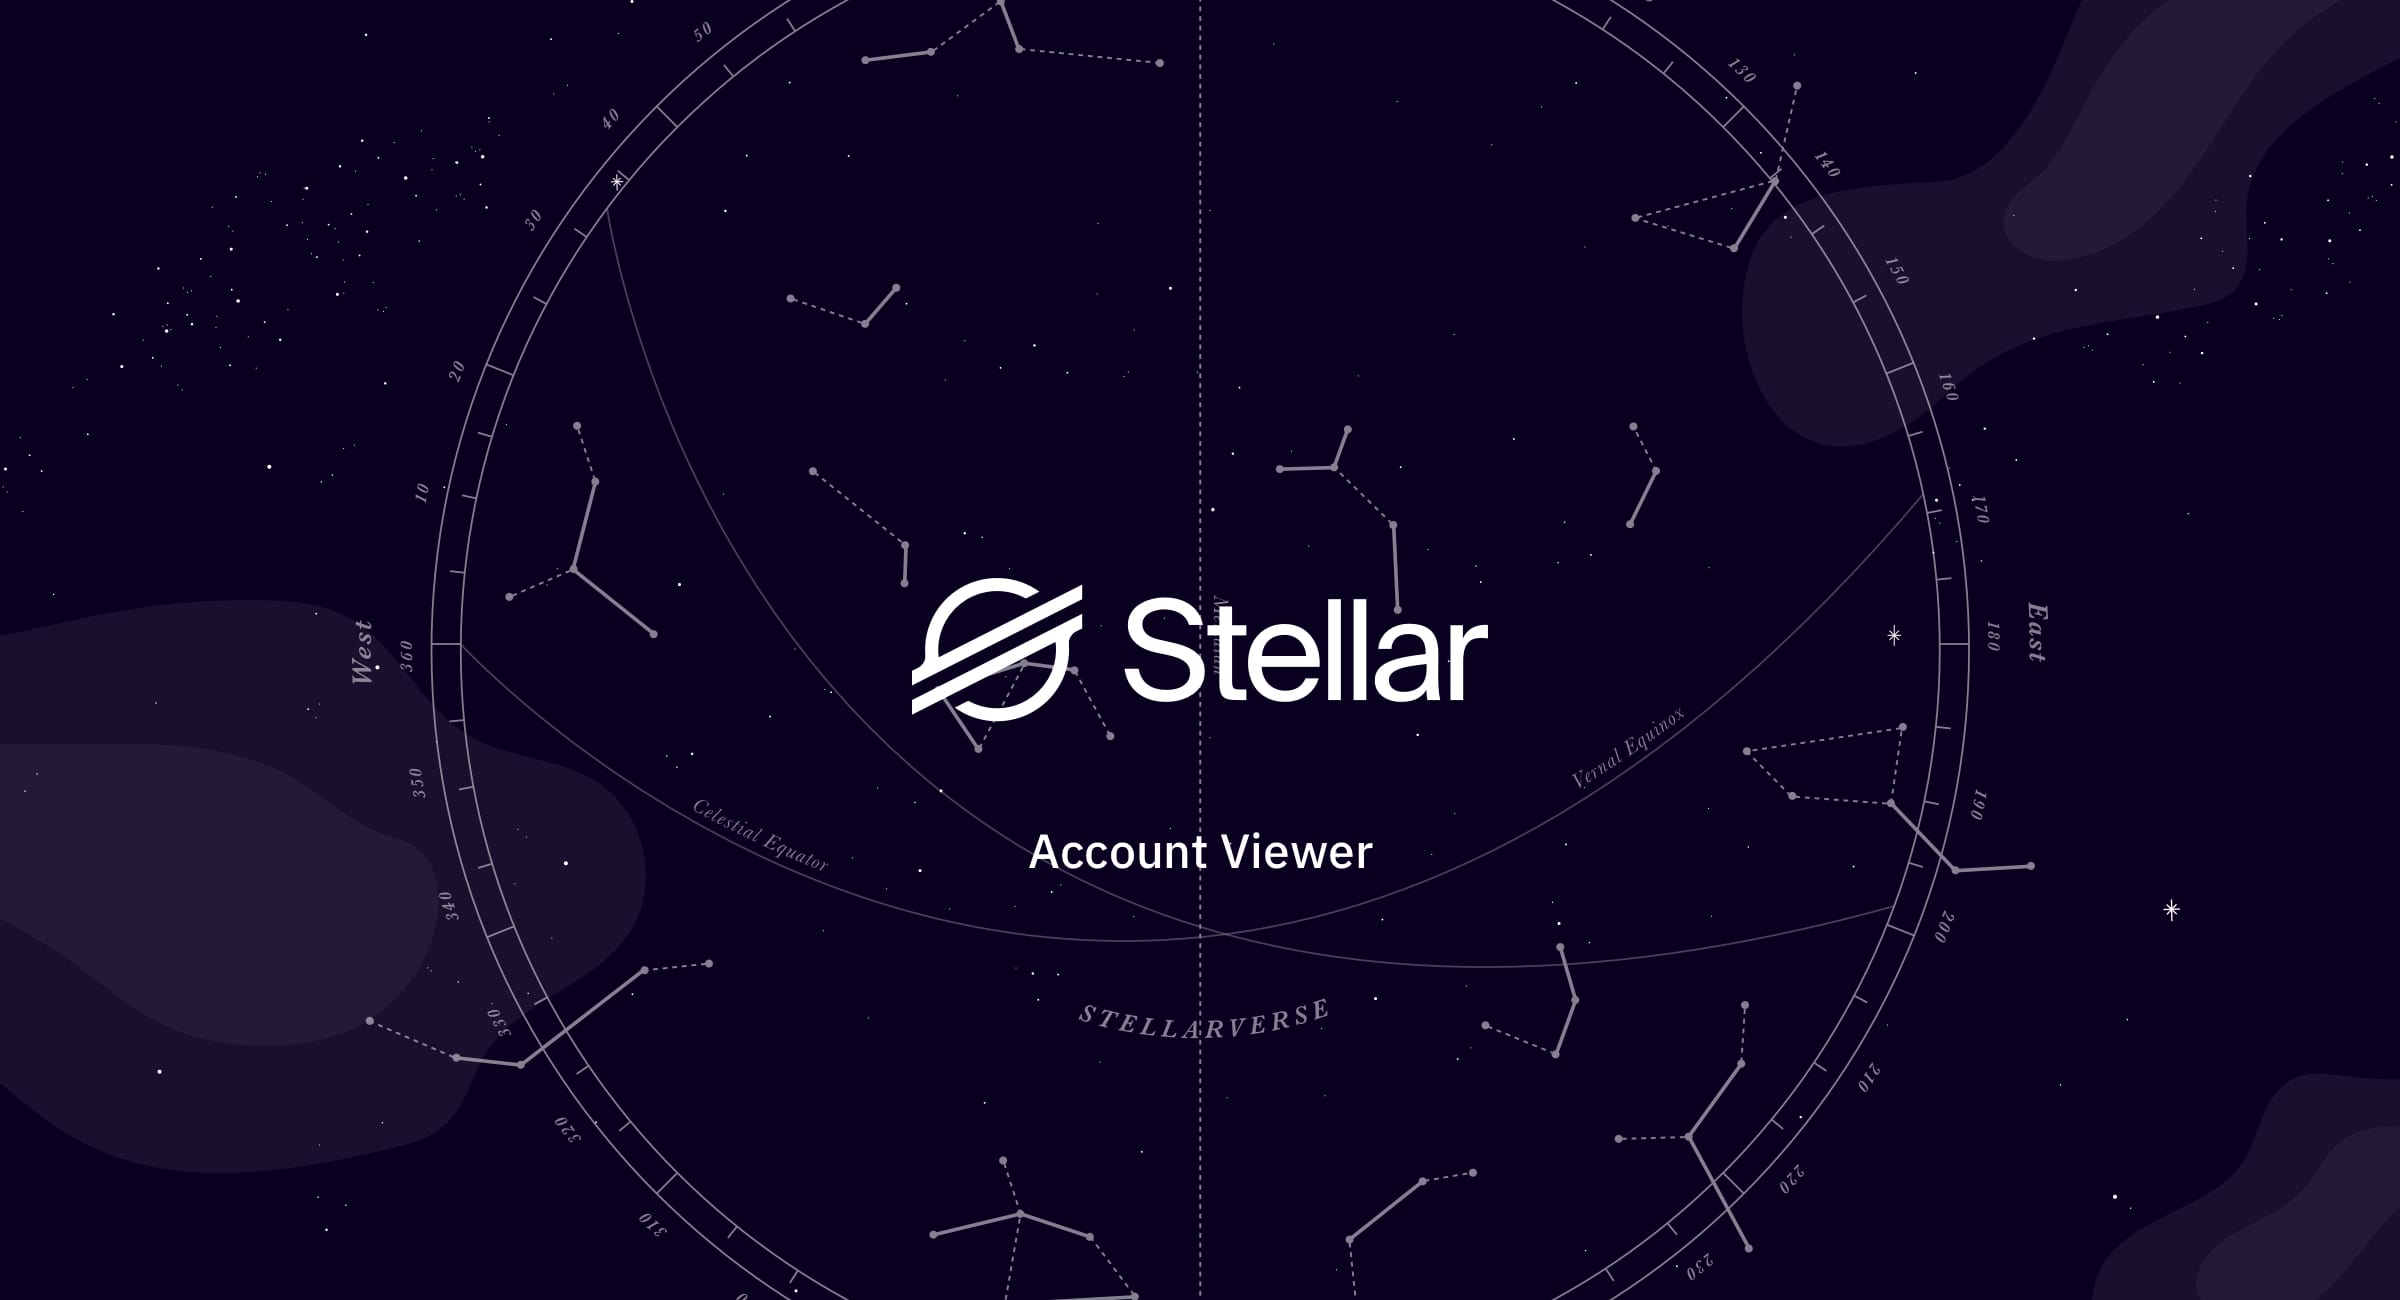 www.stellar.org